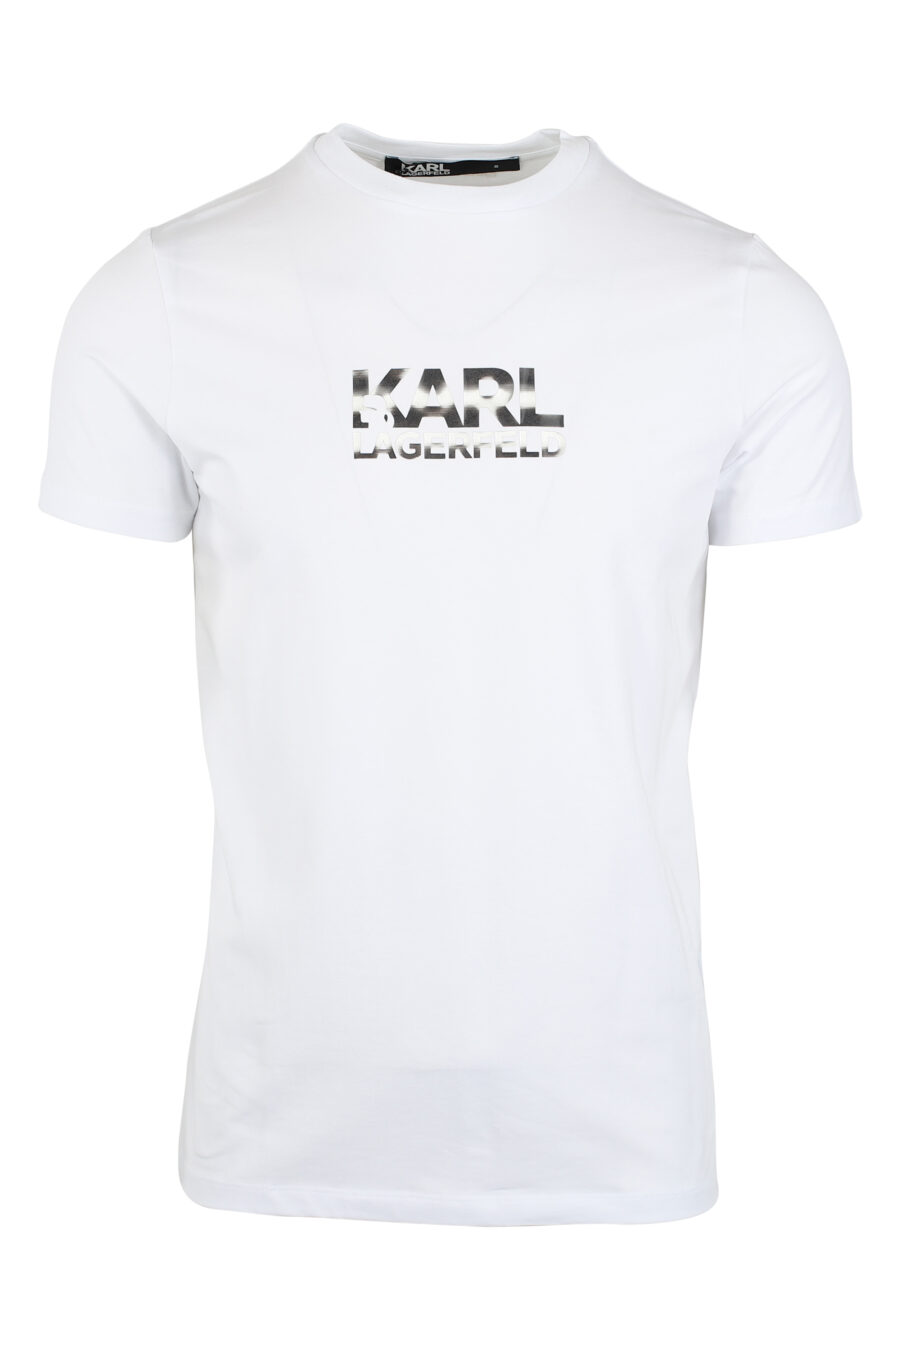 Camiseta blanca con logo efecto holograma - IMG 9485